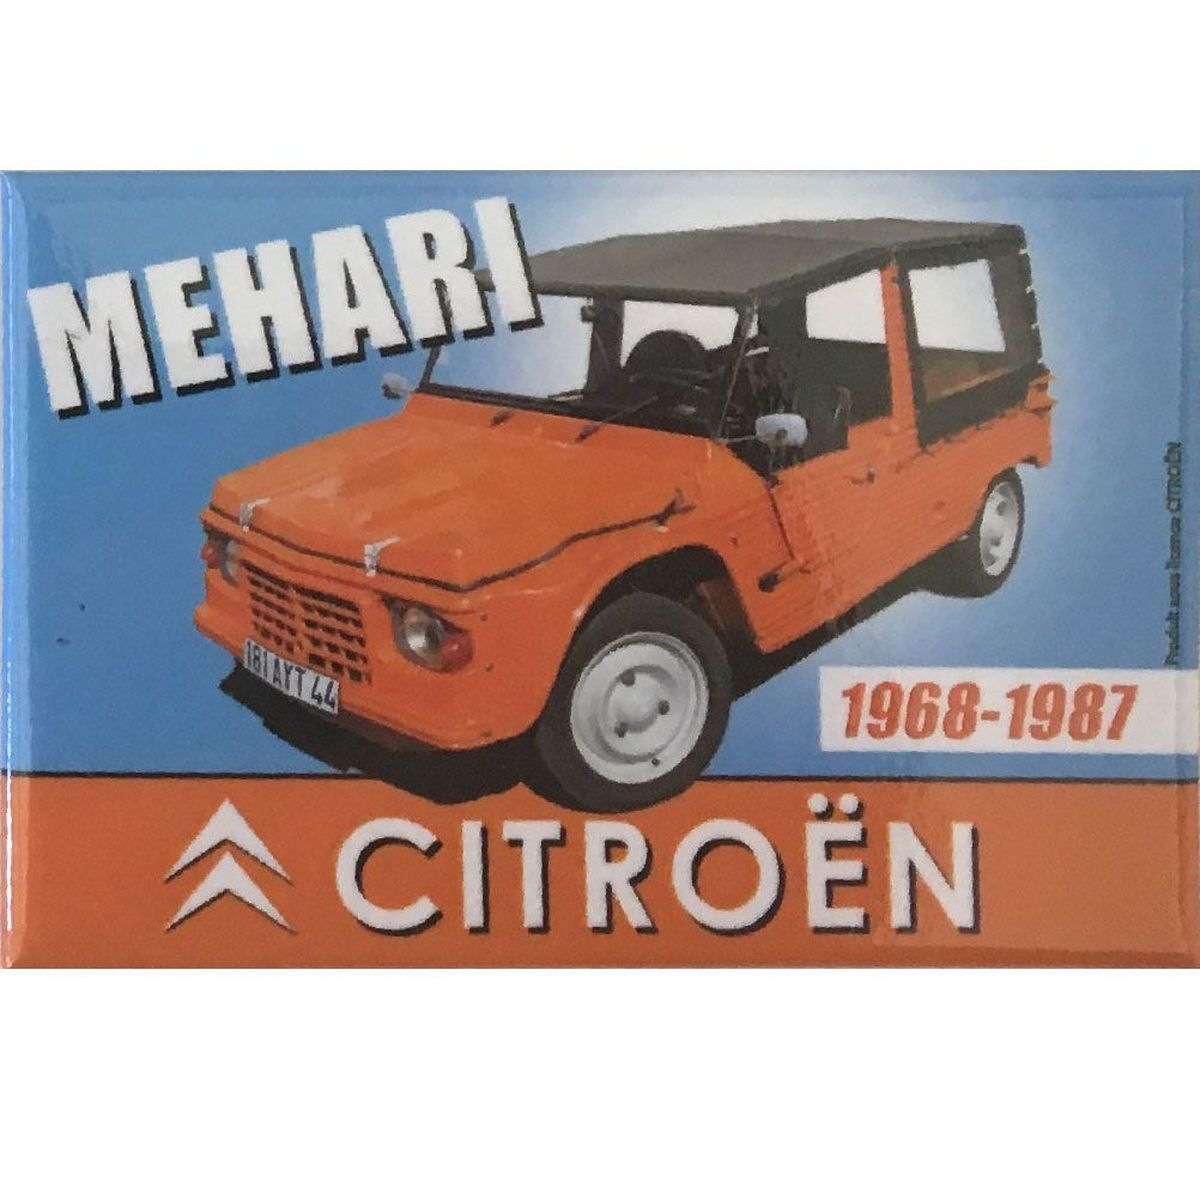 Magnet Citron Mehari 1968-1987 - 7.9 x 5.4 cm